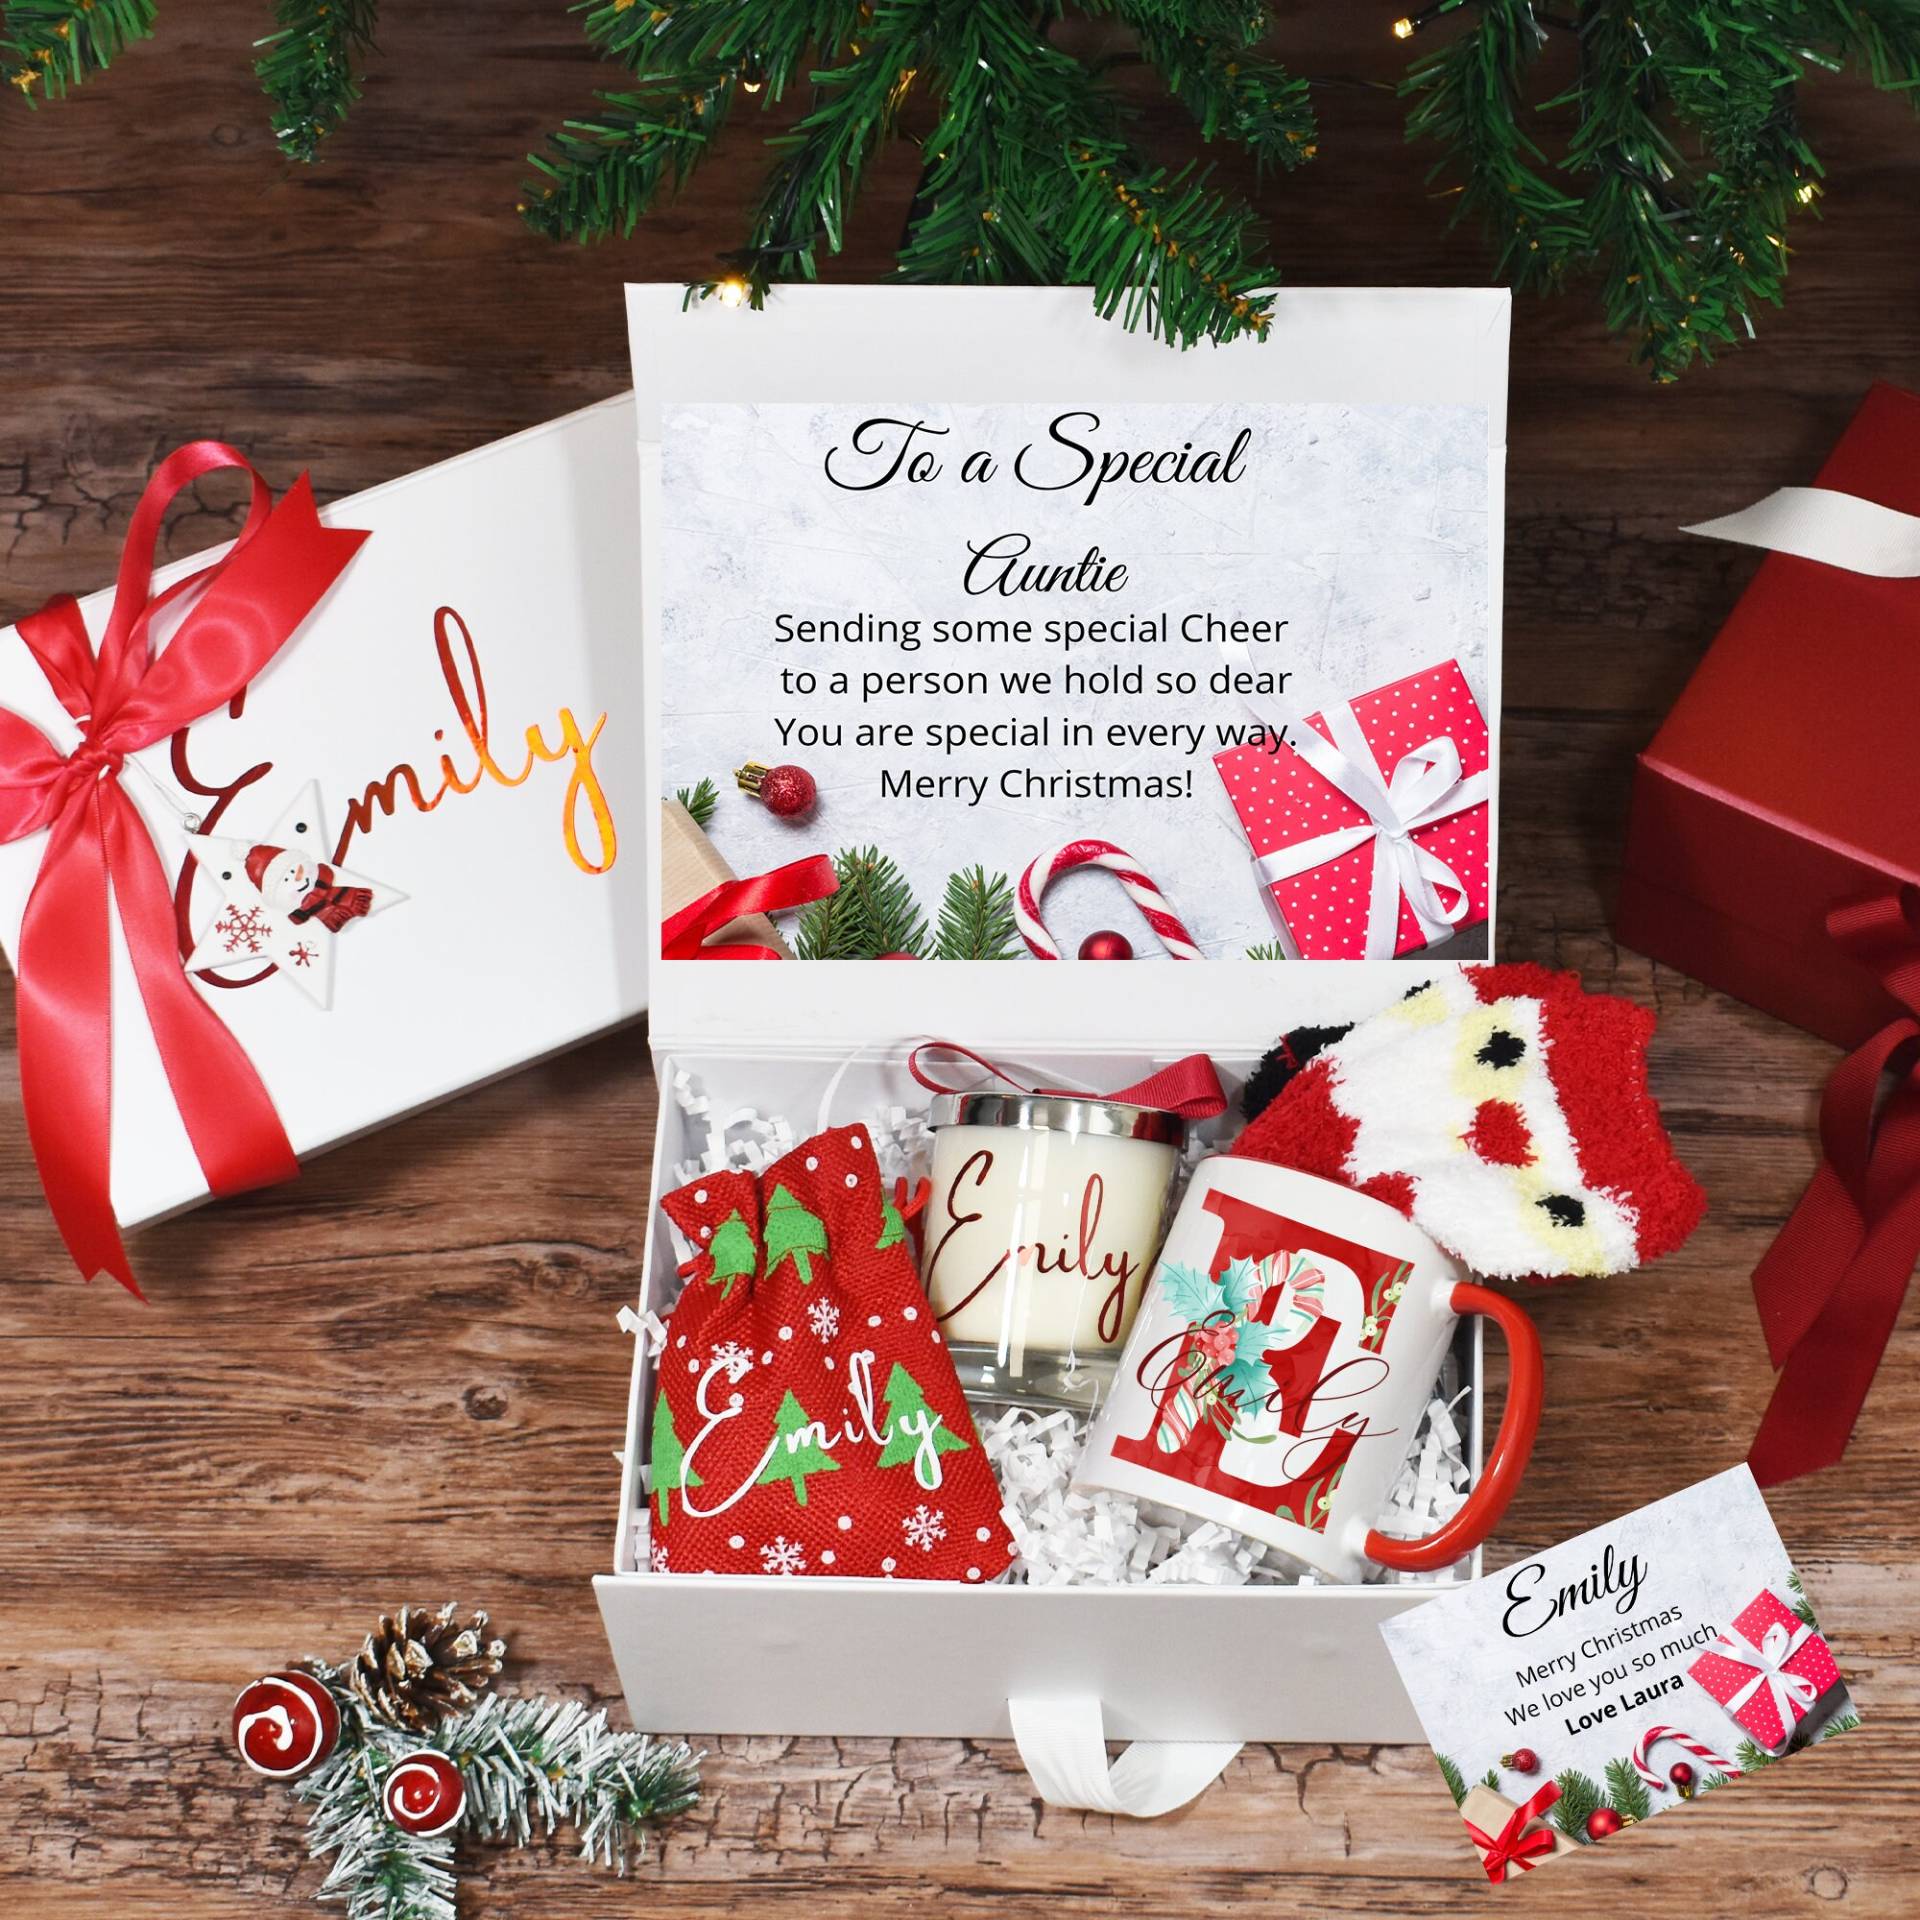 Personalisierte Weihnachtsgeschenkbox Für Tante, Luxus Weihnachtsgeschenke, Weihnachtsgeschenk Sie, Gefüllte Weihnachtsgeschenkbox von BijouxLucy